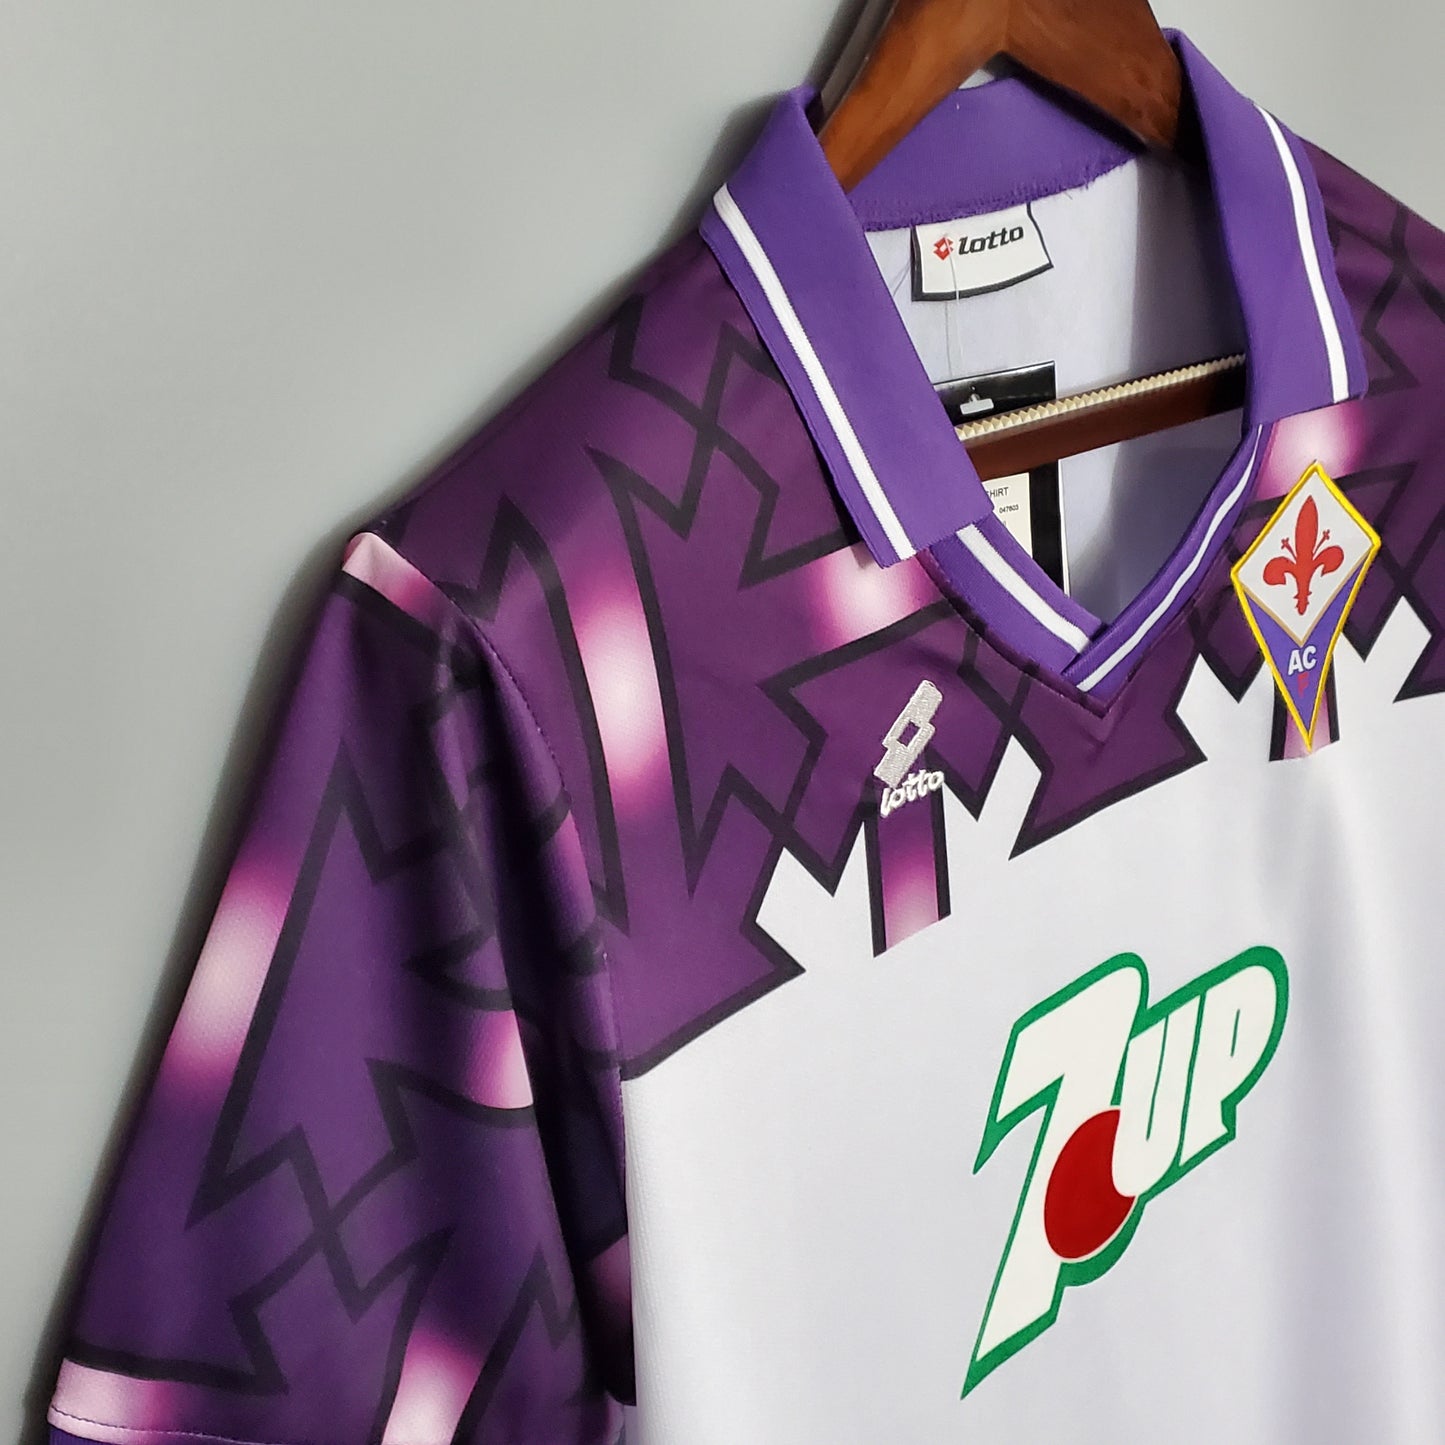 Fiorentina 1992/93 Away Jersey